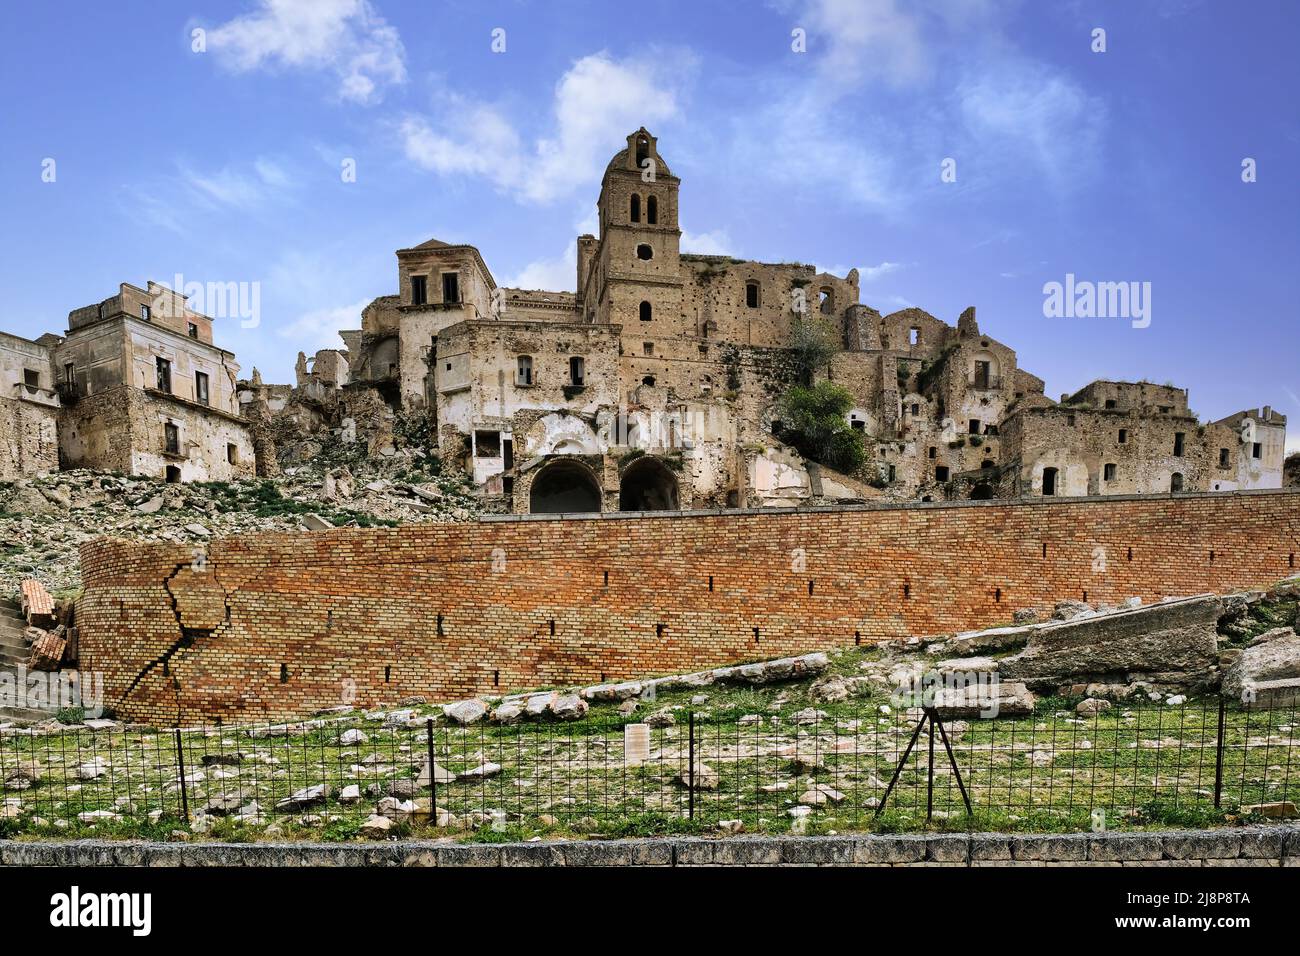 Craco (Italia) - le rovine della città fantasma tra i calanchi collinari della Basilicata, in provincia di Matera, distrutta da una frana e abbandonata Foto Stock